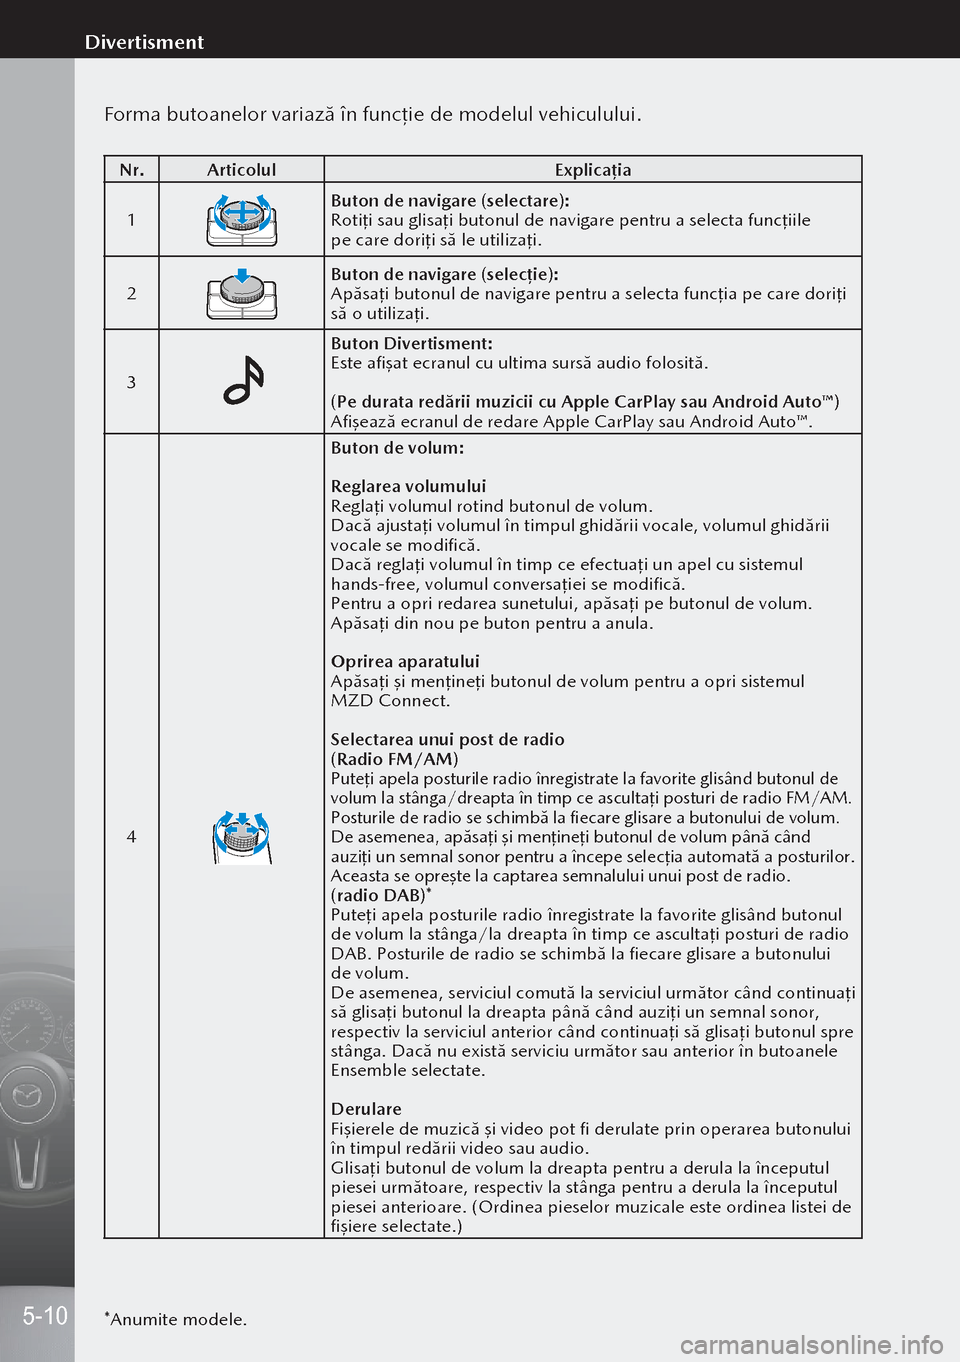 MAZDA MODEL 3 HATCHBACK 2019  Manualul de utilizare (in Romanian) Forma butoanelor variază în funcţie de modelul vehiculului.
Nr.Articolul Explicația
1
Buton de navigare (selectare):
Rotiţi sau glisaţi butonul de navigare pentru a selecta funcţii\
le 
pe car